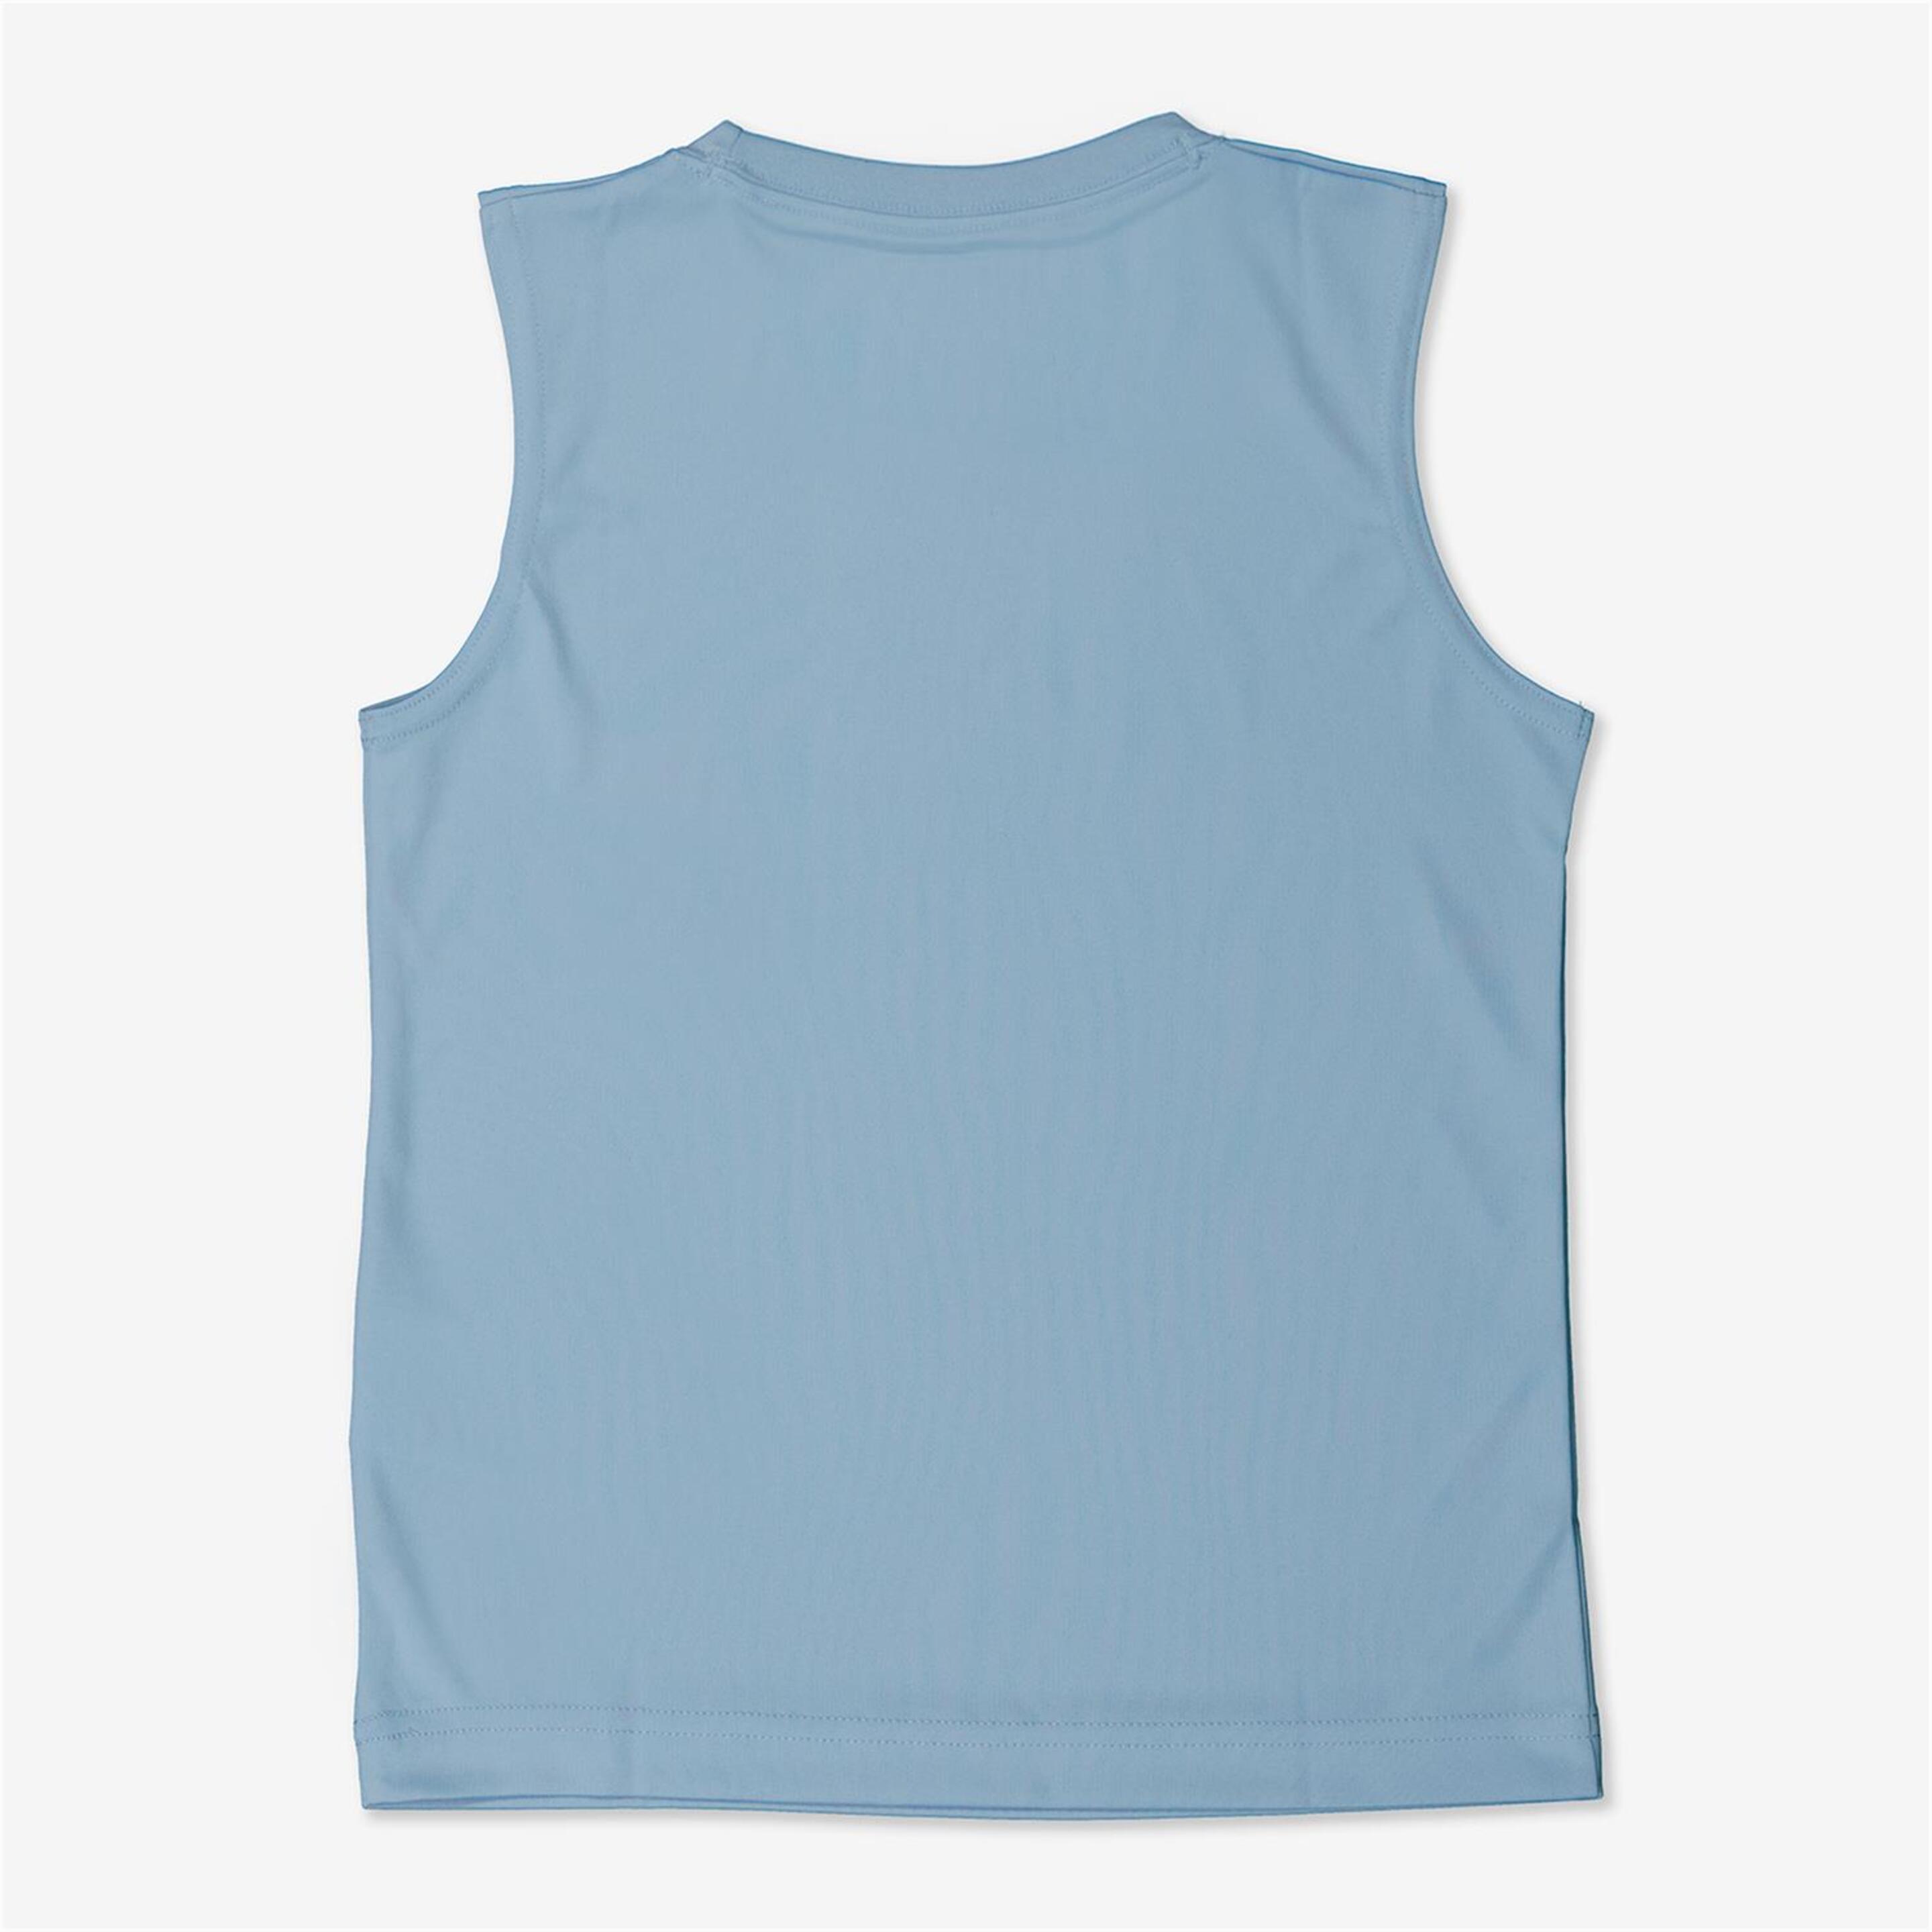 Camiseta Nike - Azul - Camiseta Tirantes Niño